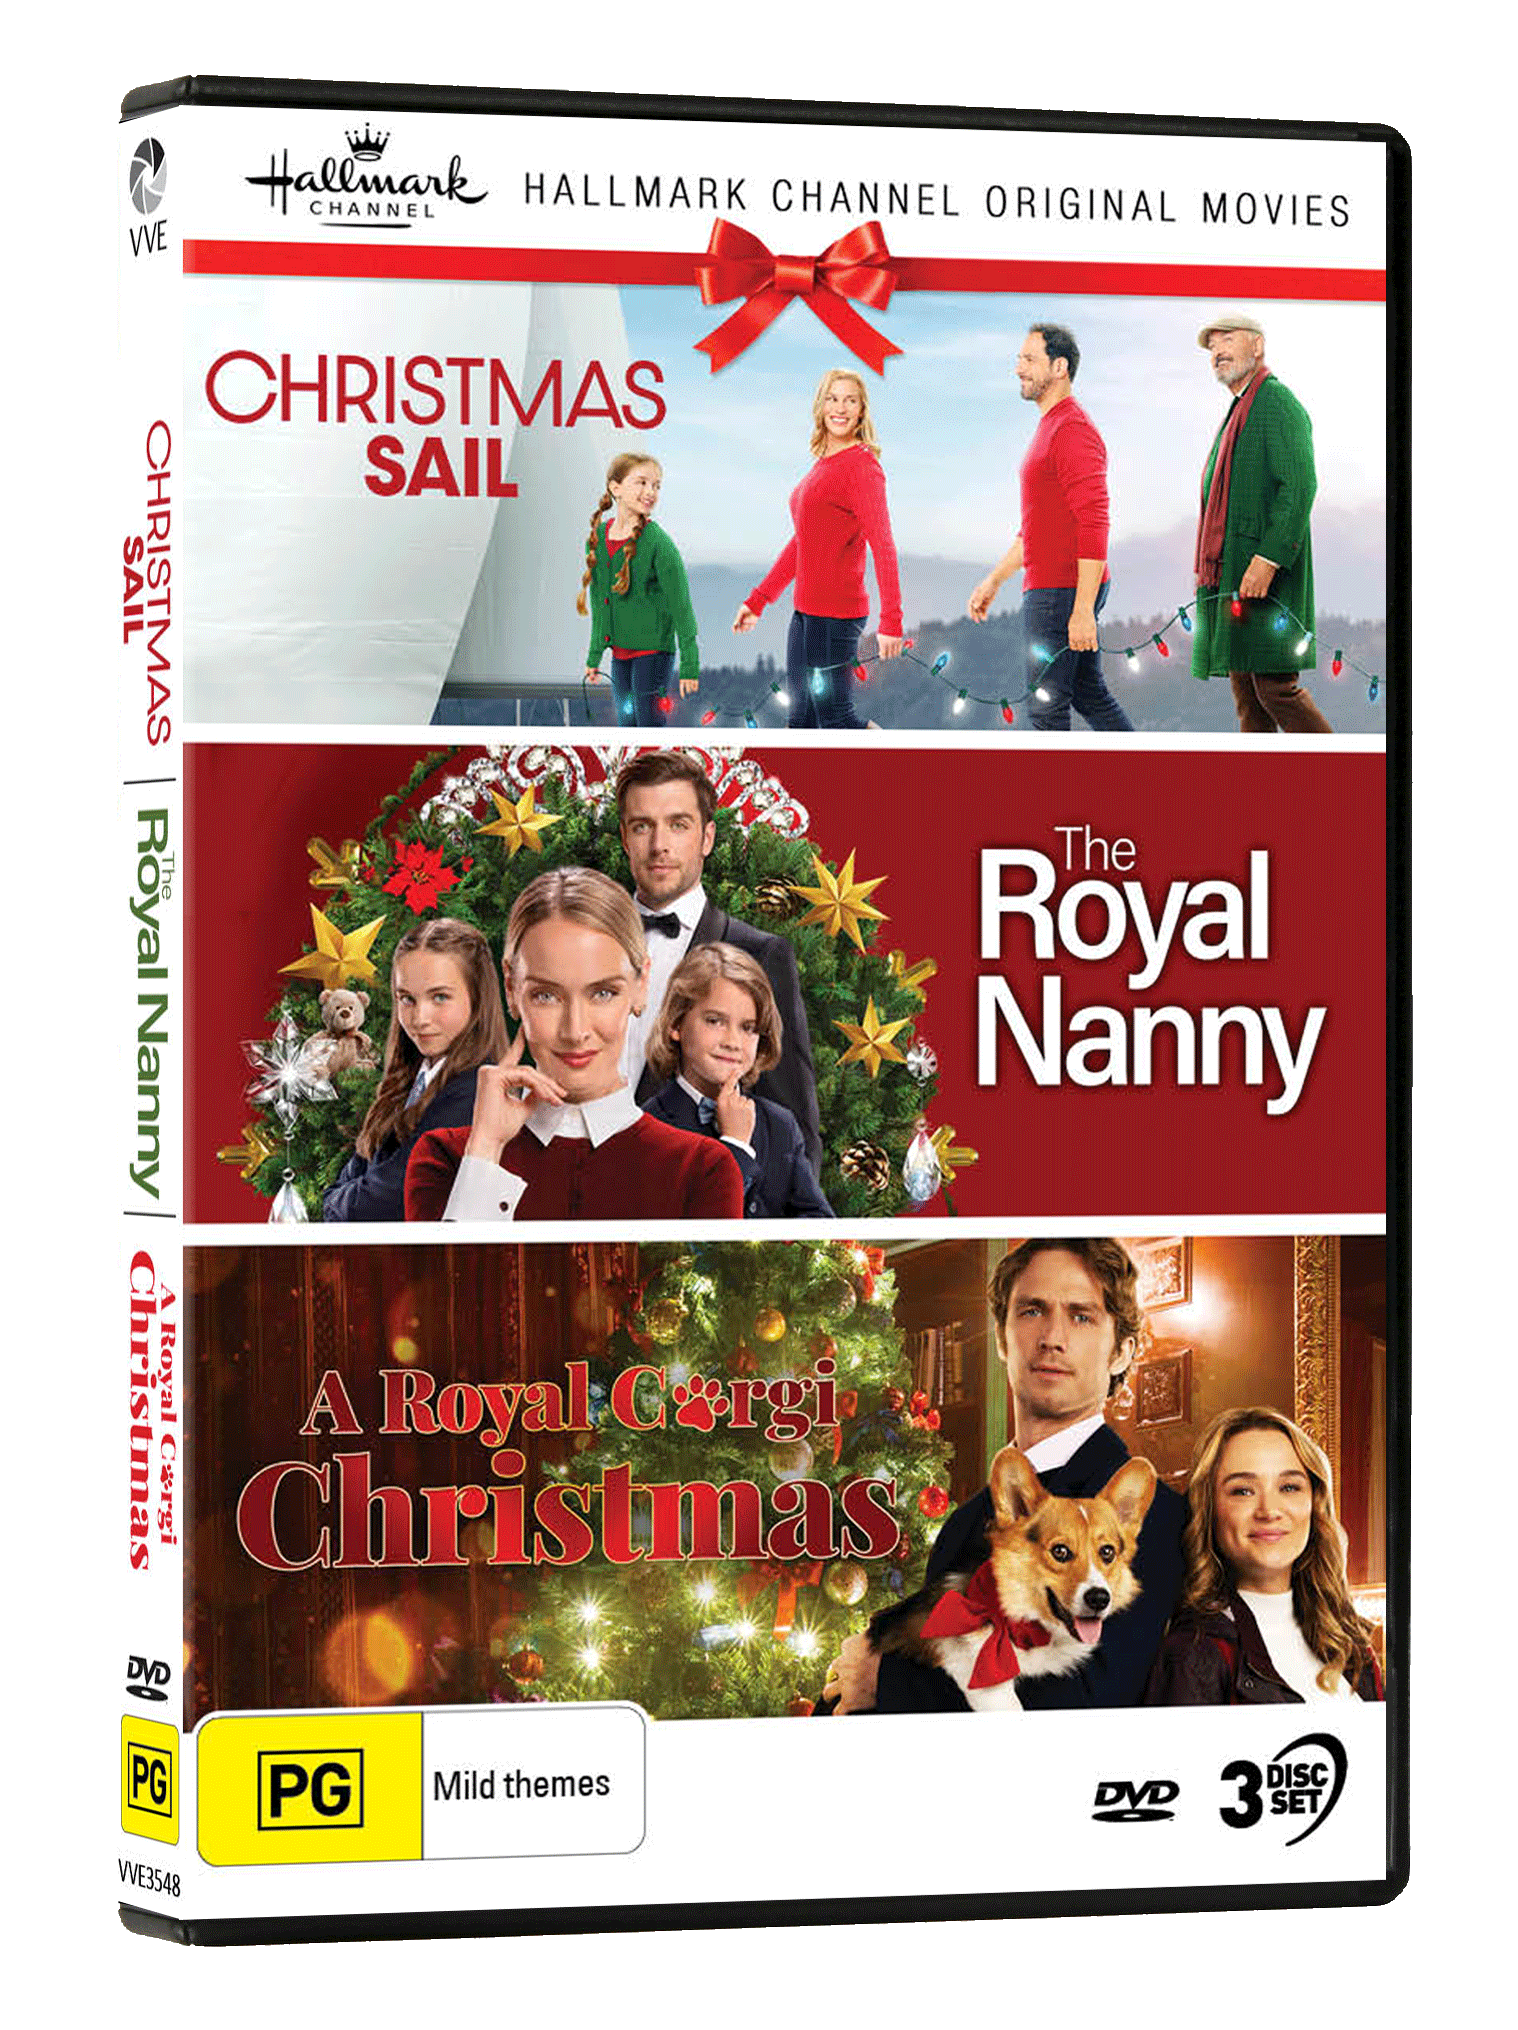 Hallmark Christmas Collection 29 (Christmas Sail / The Royal Nanny / A